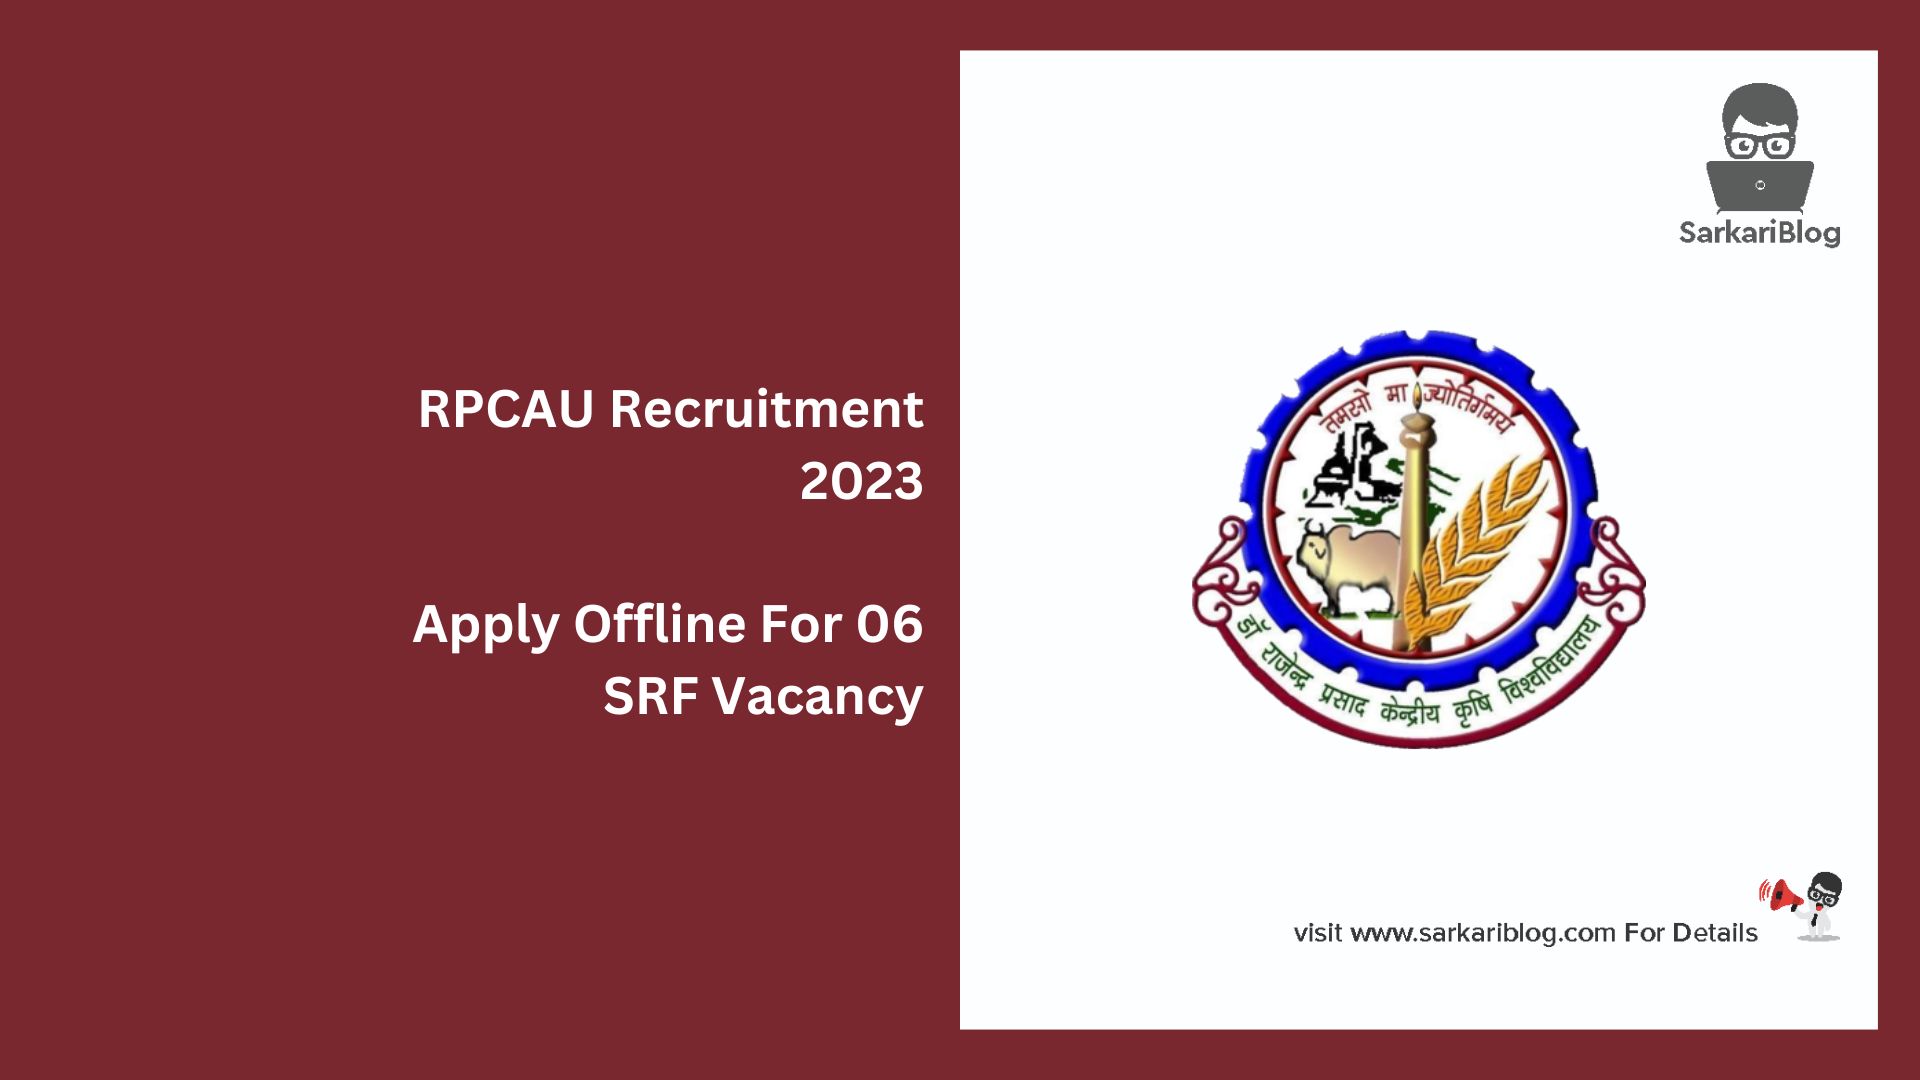 RPCAU Recruitment 2023